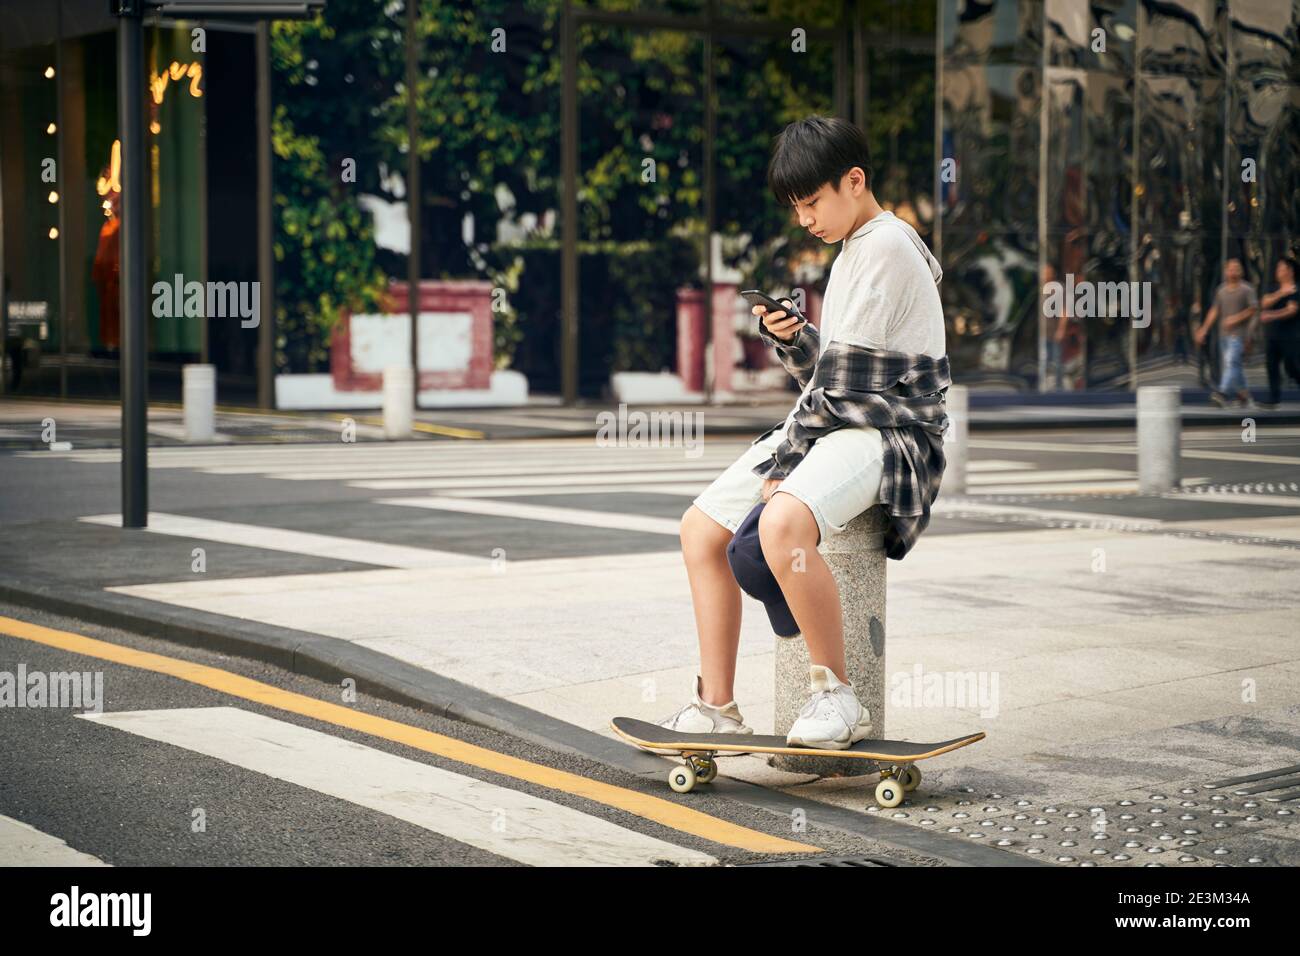 adolescente asiatico skateboarder bambino che guarda il telefono cellulare mentre si riposa Foto Stock